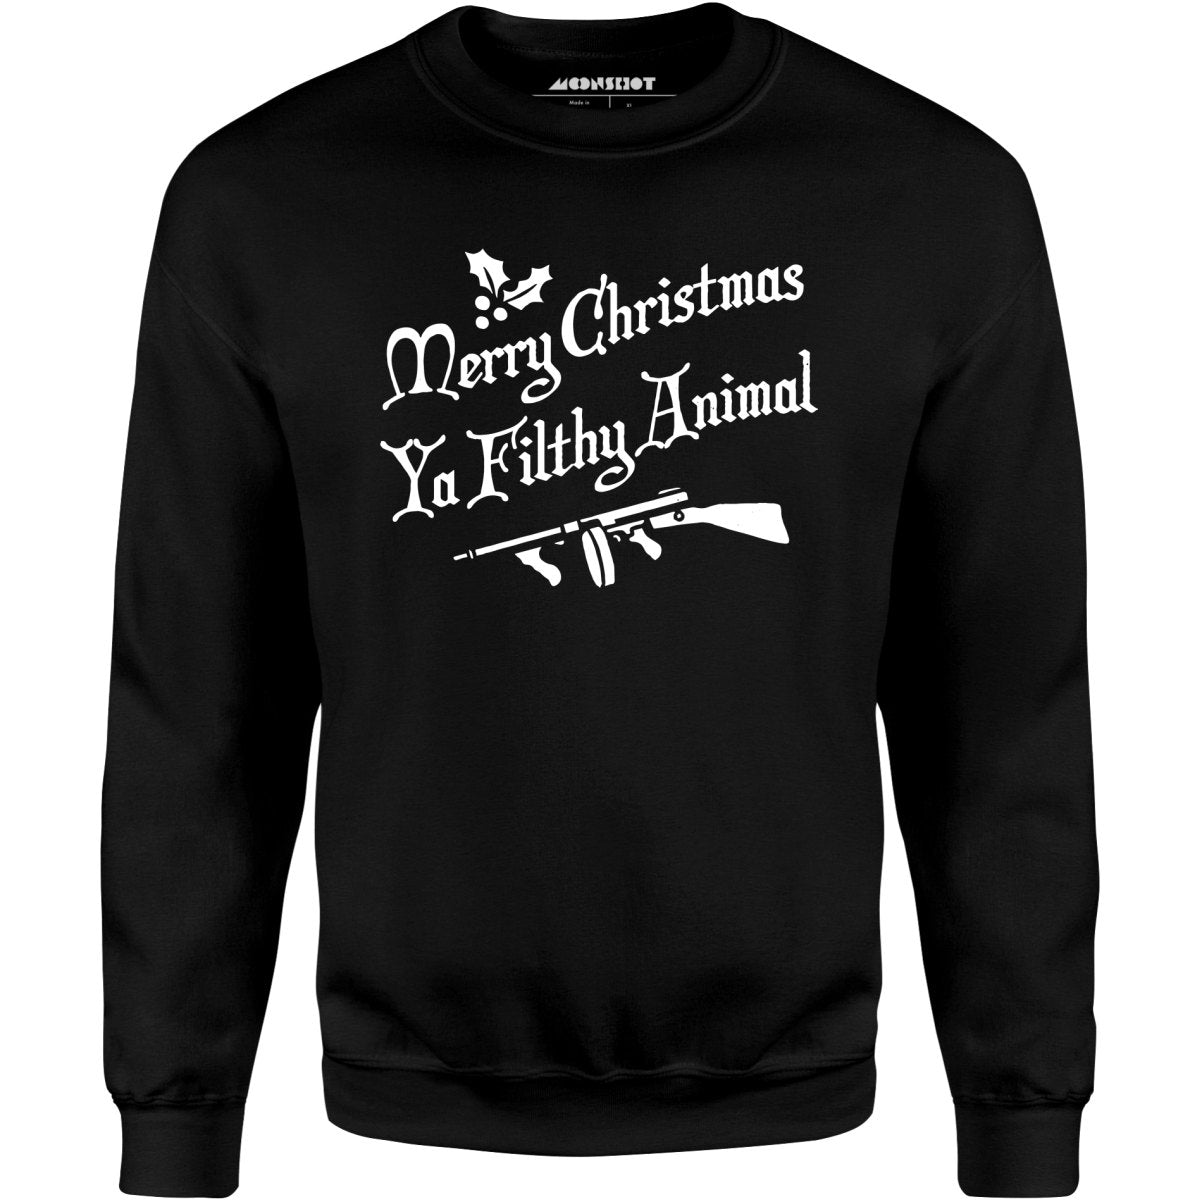 Merry Christmas Ya Filthy Animal - Unisex Sweatshirt